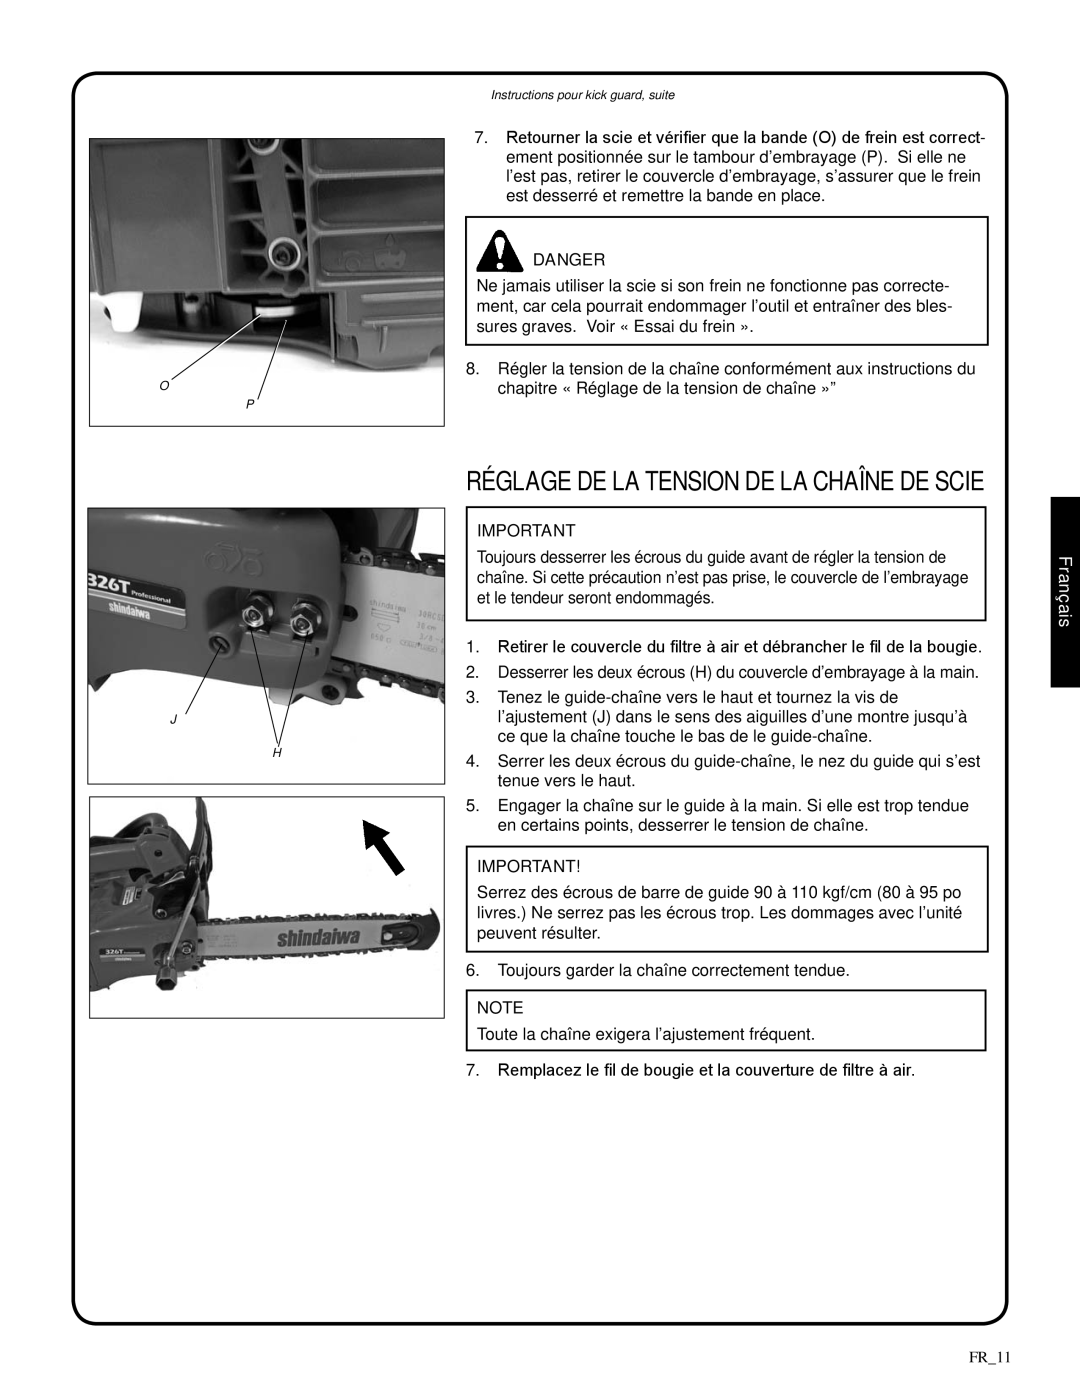 Shindaiwa 326T, 82085 manual réglage de la tension de la chaîne de scie, Danger, Français 